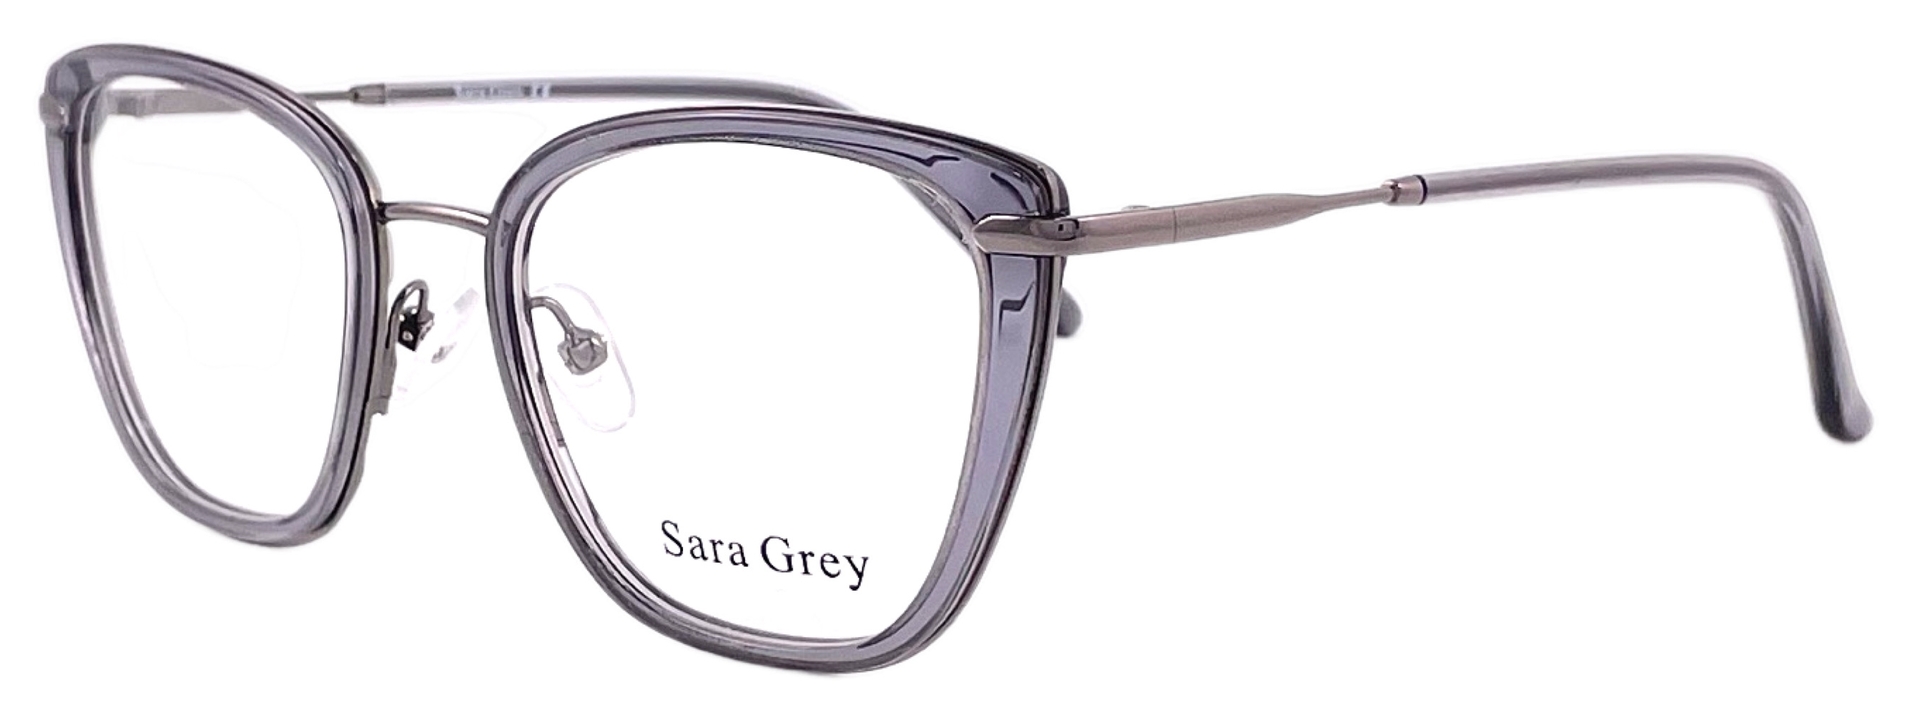 Sara Grey 1032 C03 2